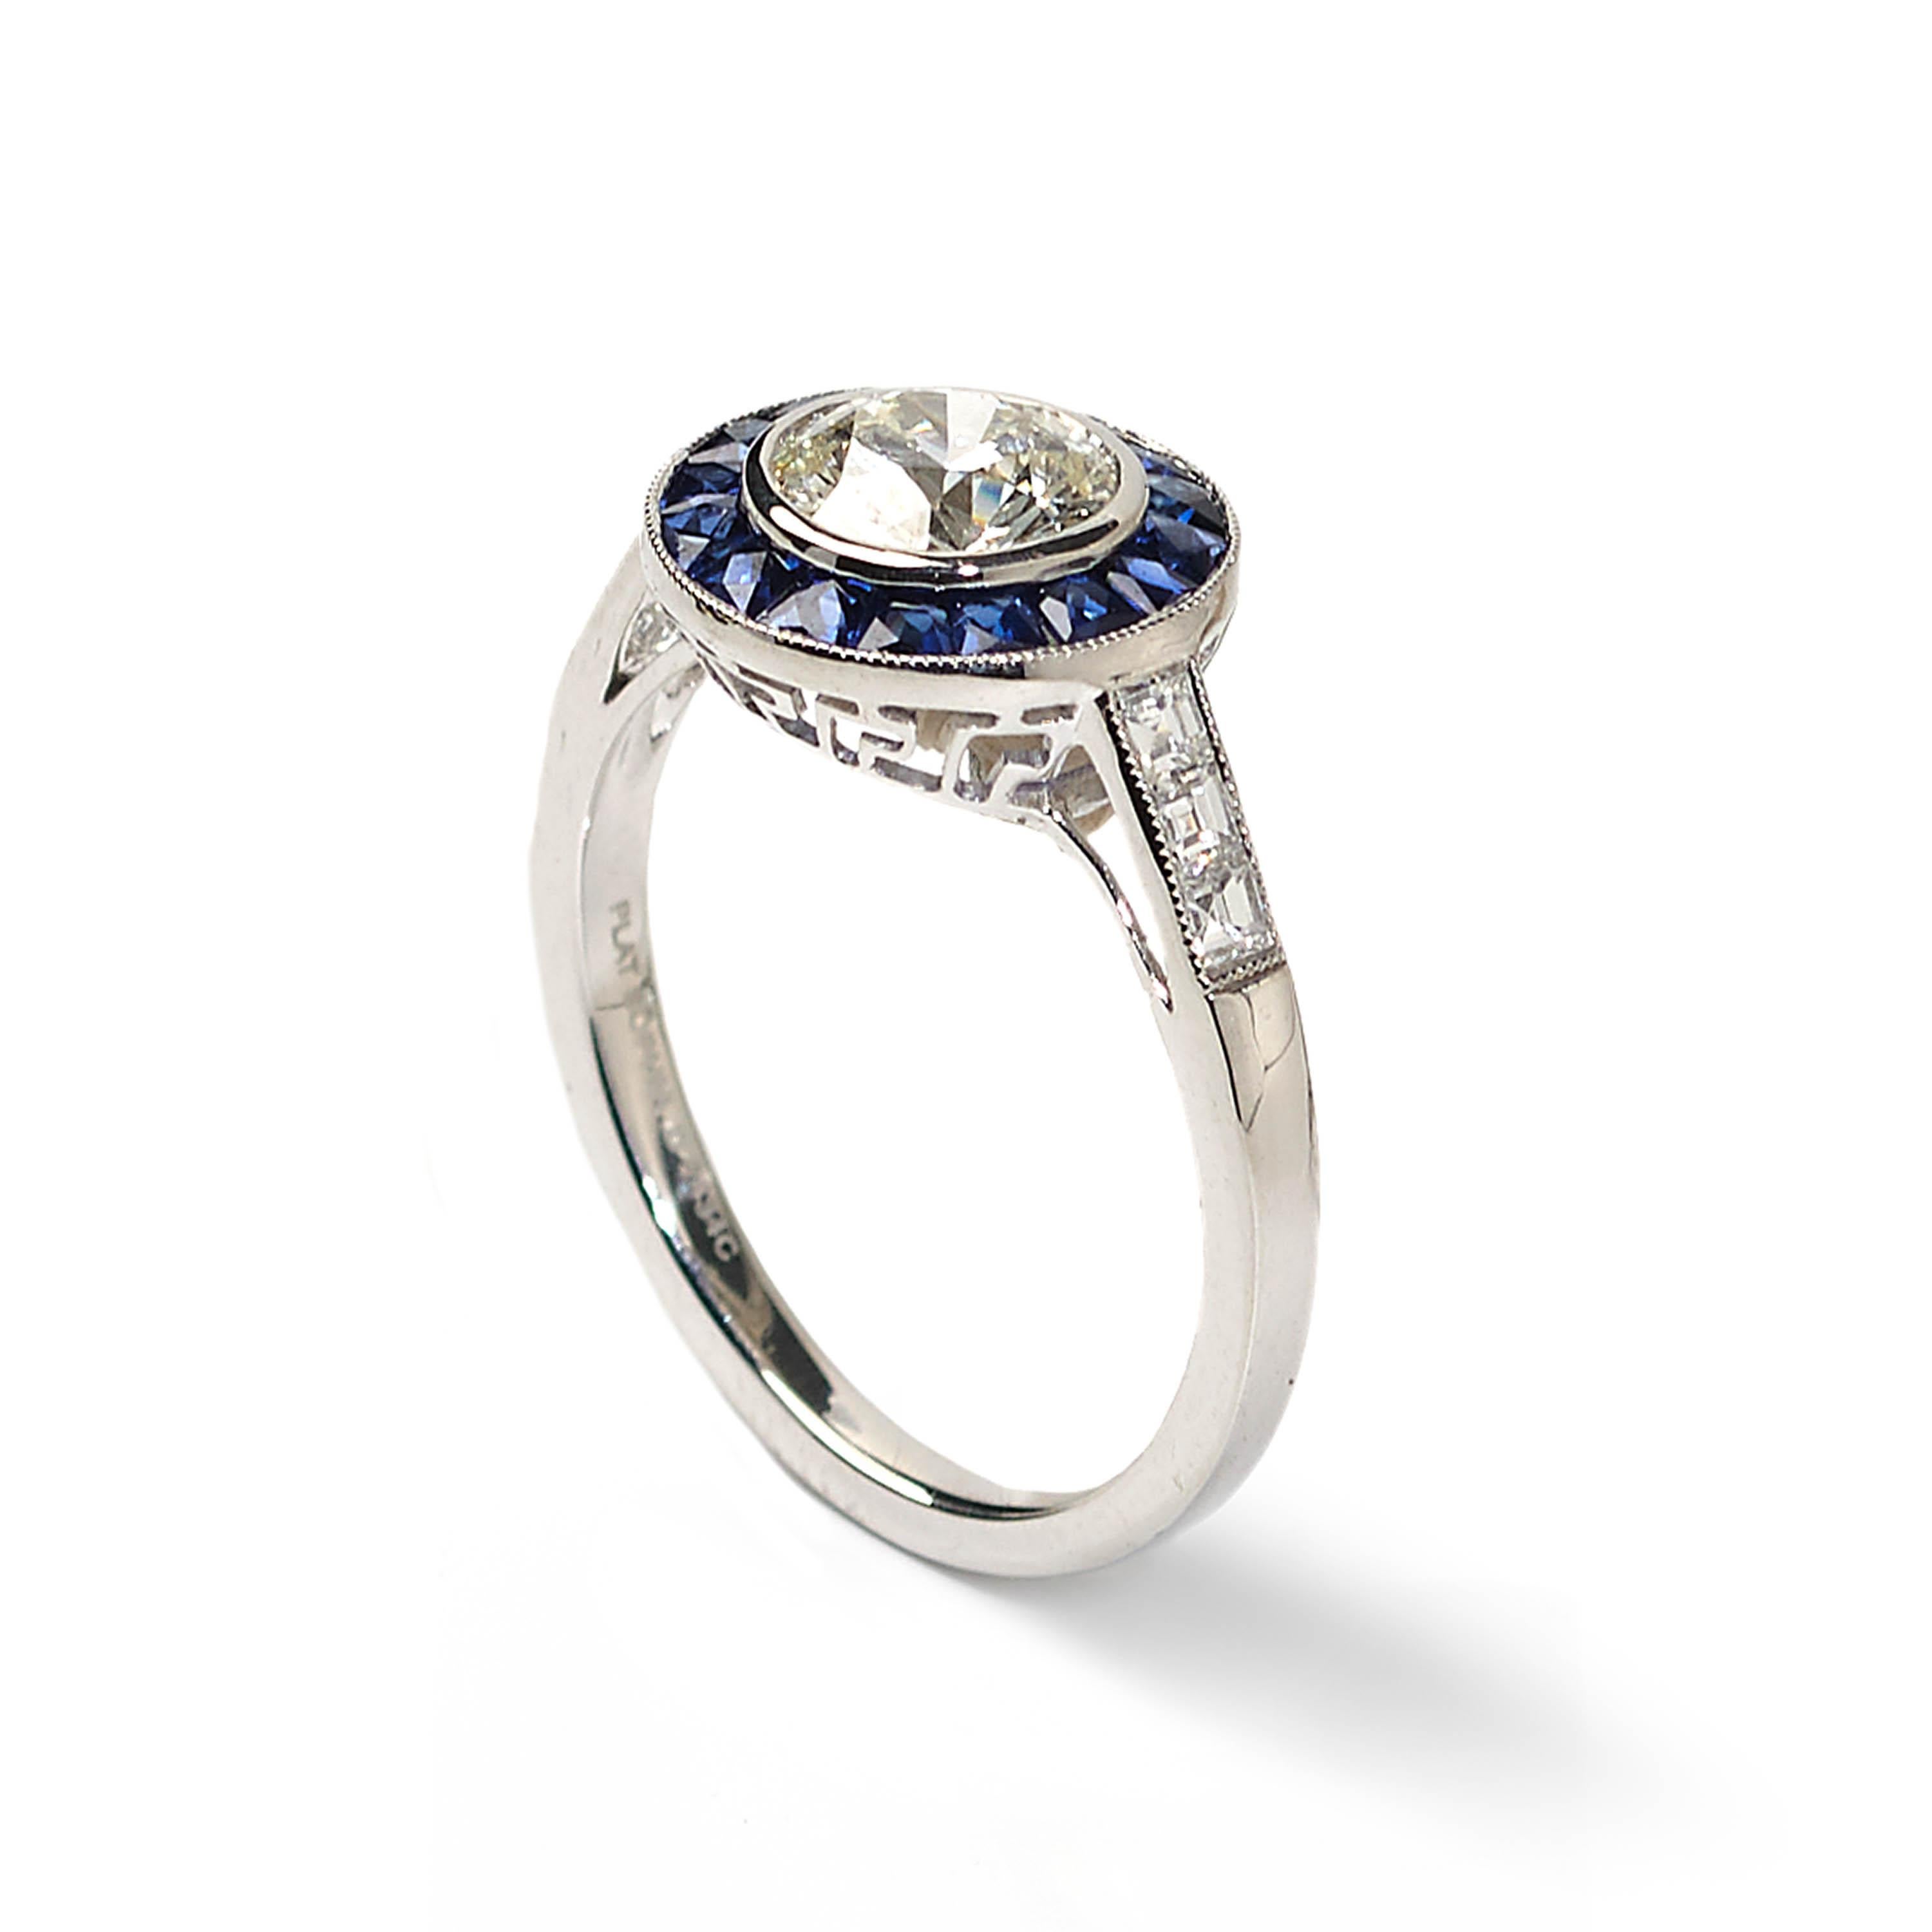 Ein moderner Halo-Design-Cluster-Ring mit einem zentralen runden Diamanten mit einem Gewicht von 1,00 Karat, umgeben von einer Grenze von blauen Saphiren mit einem Gesamtgewicht von 0,68 Karat, mit Diamanten gesetzt Schultern mit einem Gesamtgewicht